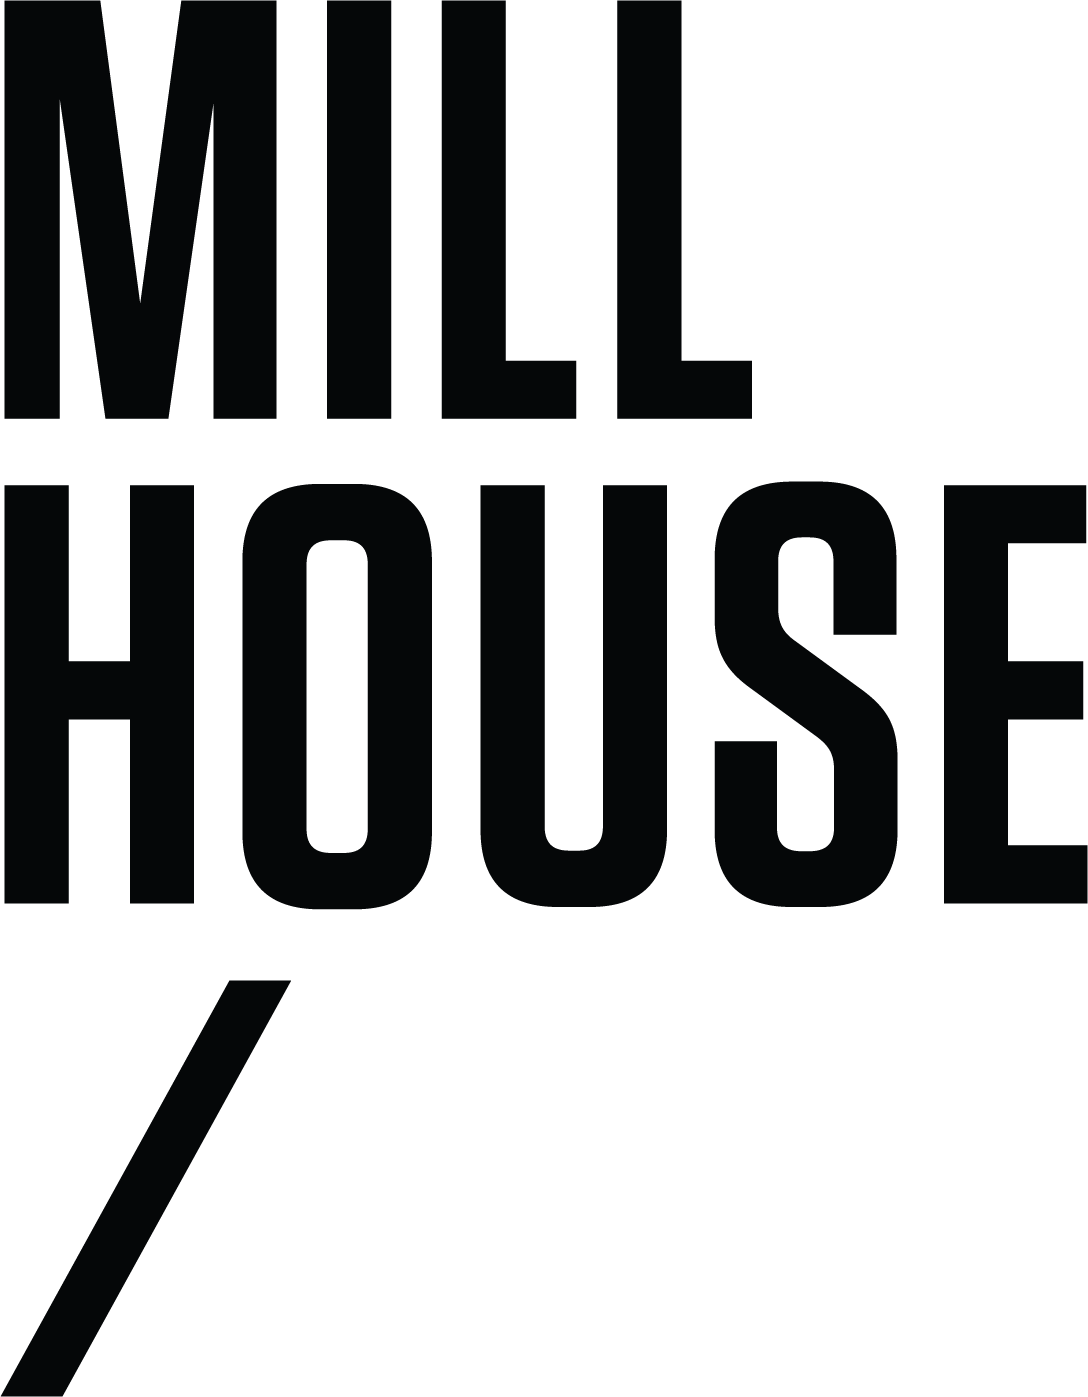 www.millhousepodcast.com